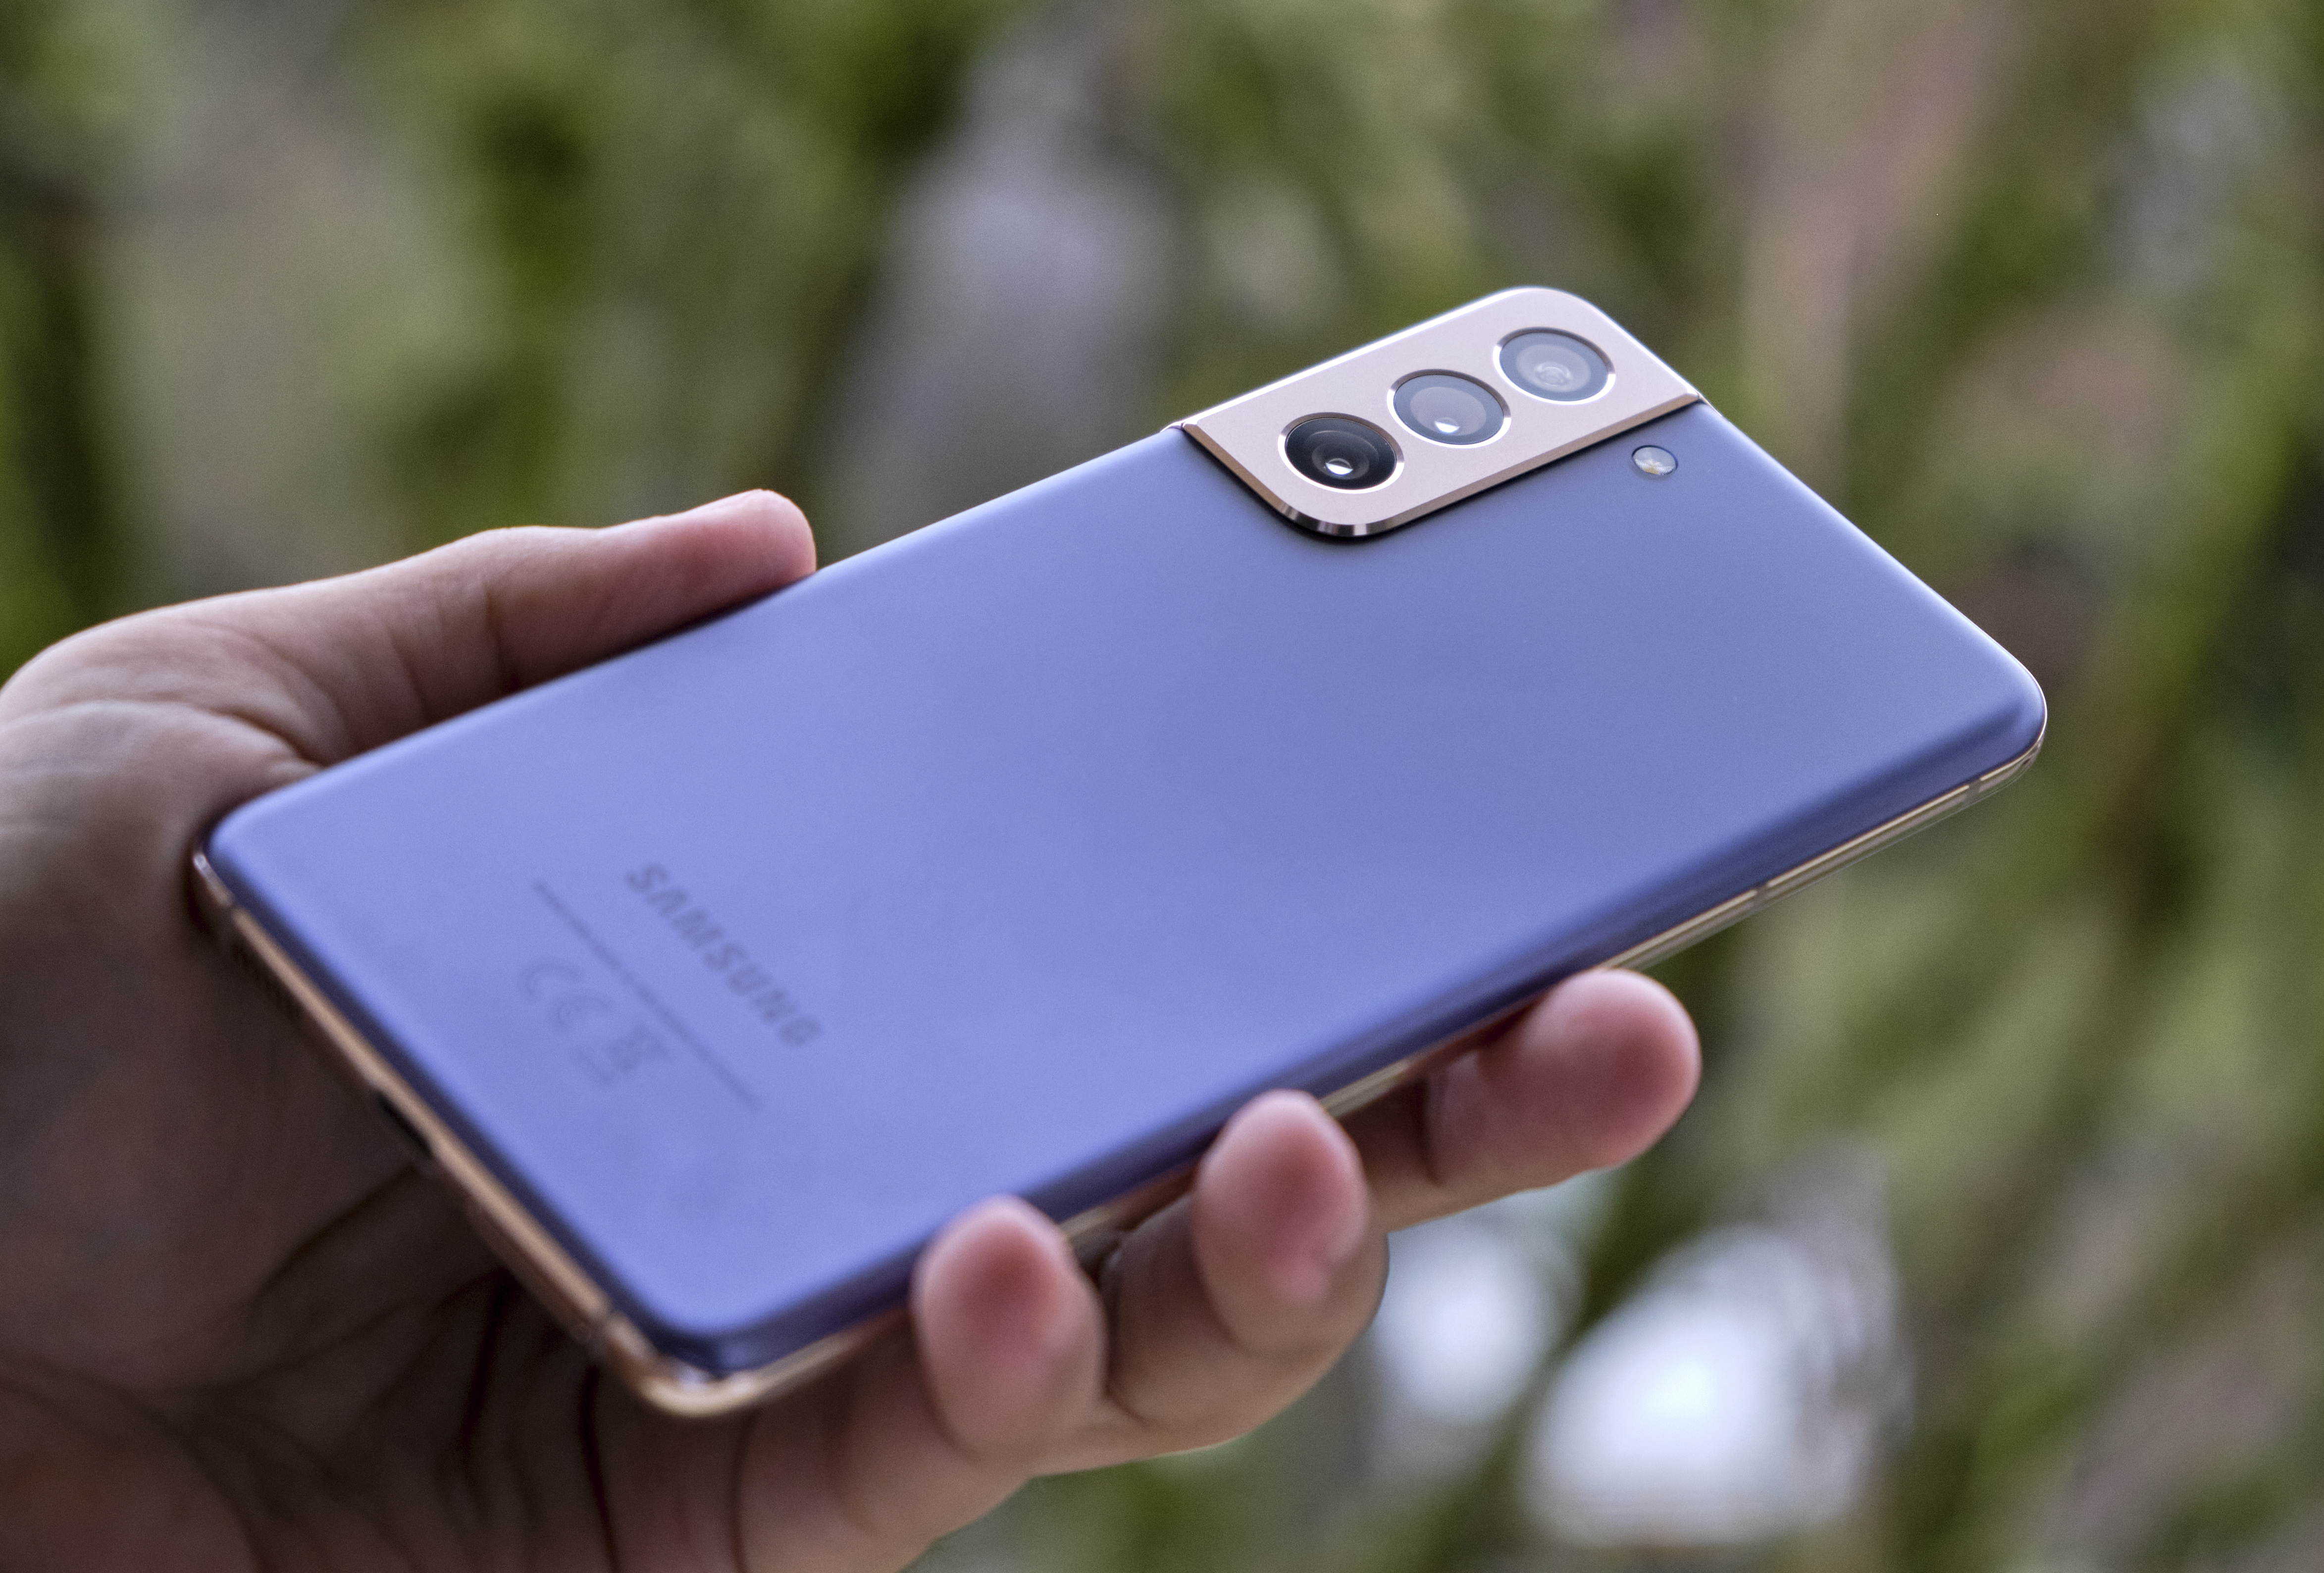 Samsung Galaxy S21 Ultra hands-on: The best just got better